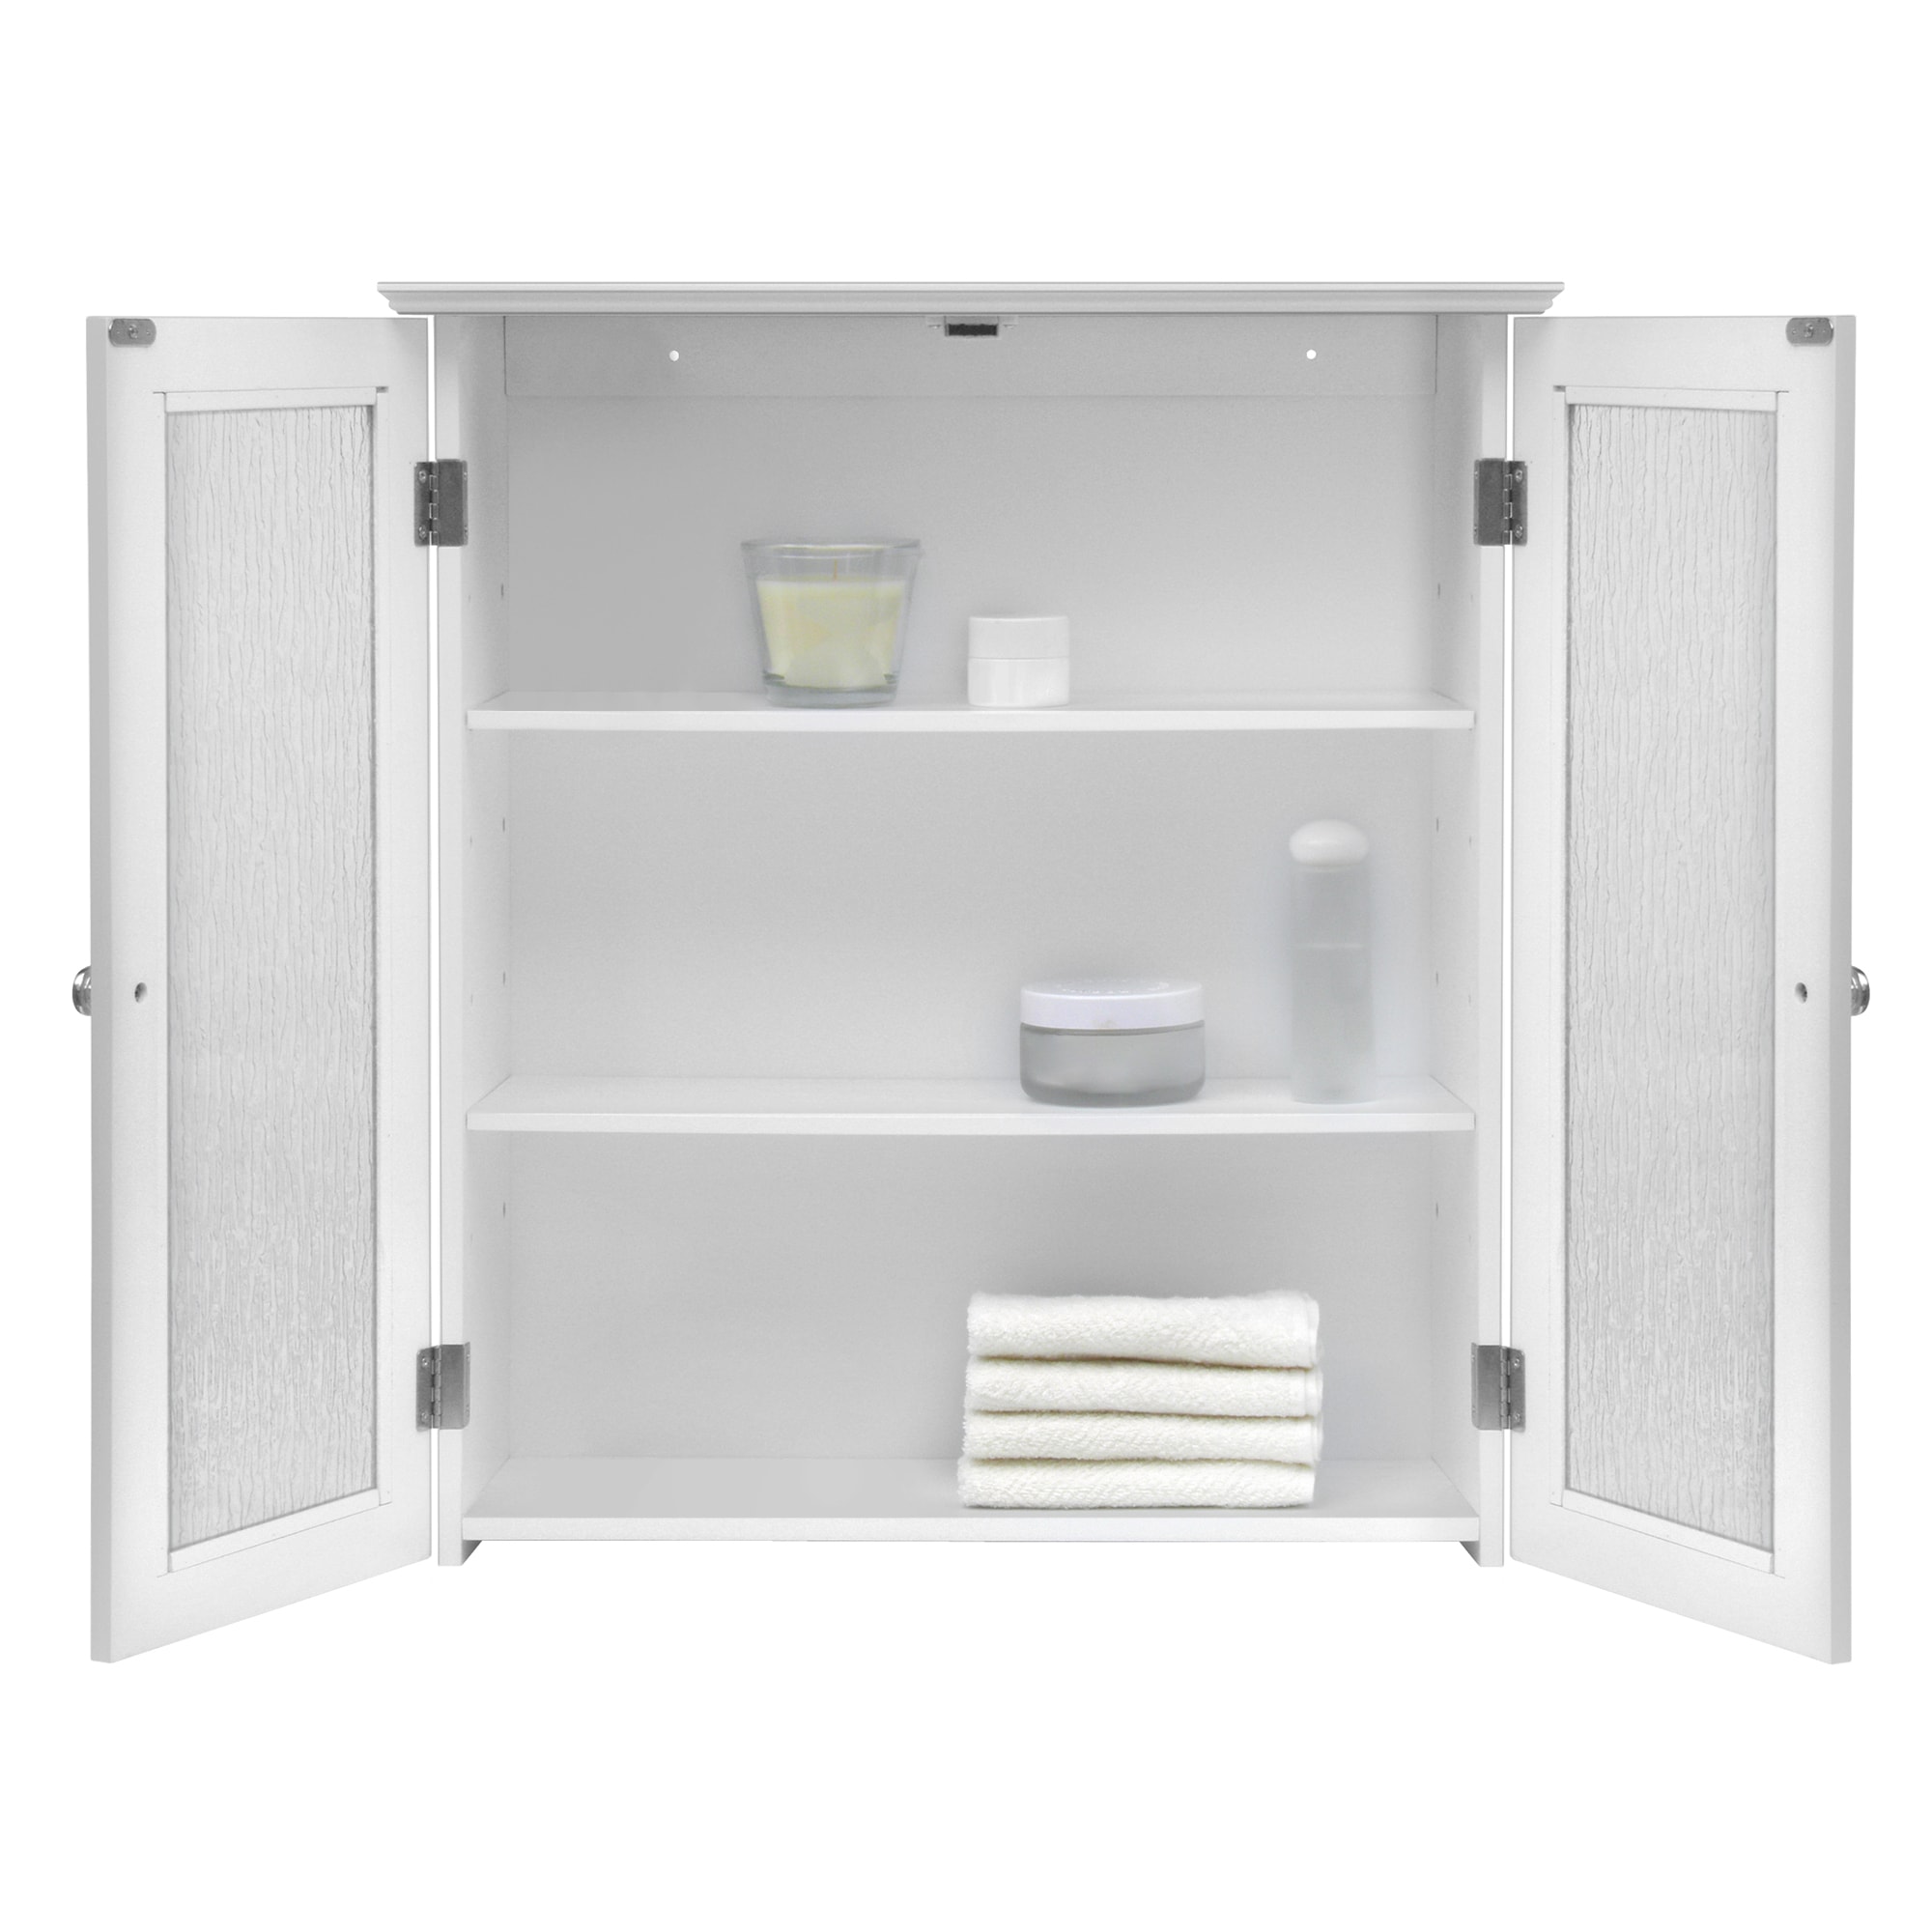 Bauer 22 Wide 4-Drawer White Bathroom Storage Cabinet - #790H0